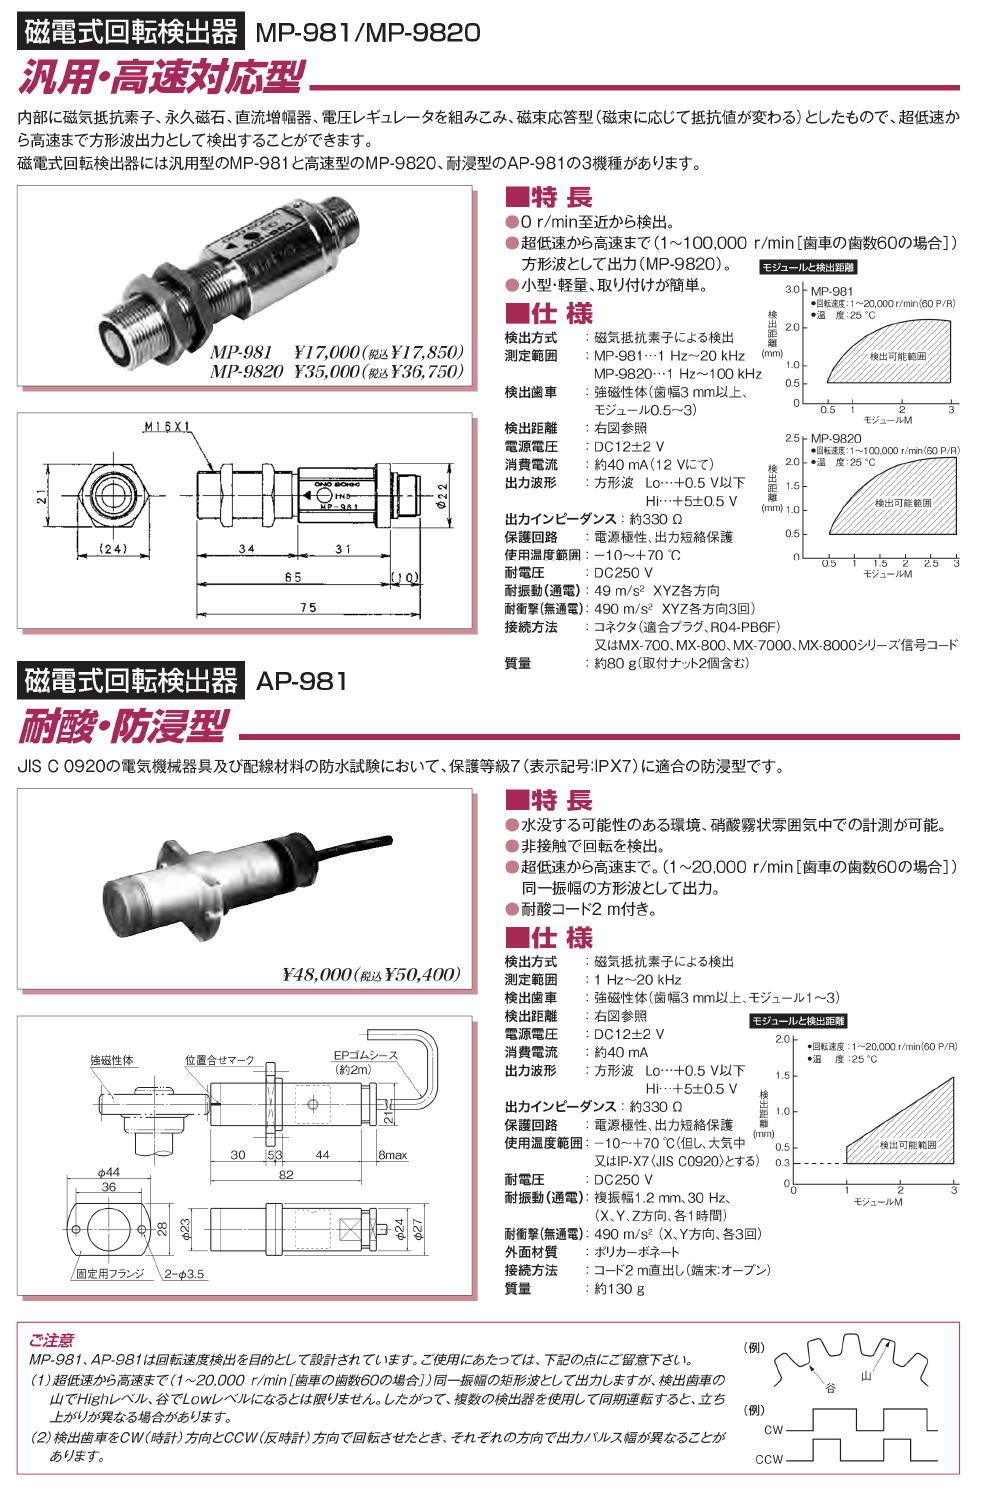 小野測器 磁電式回転検出器 MP-981 〈非接触歯車検出タイプ〉